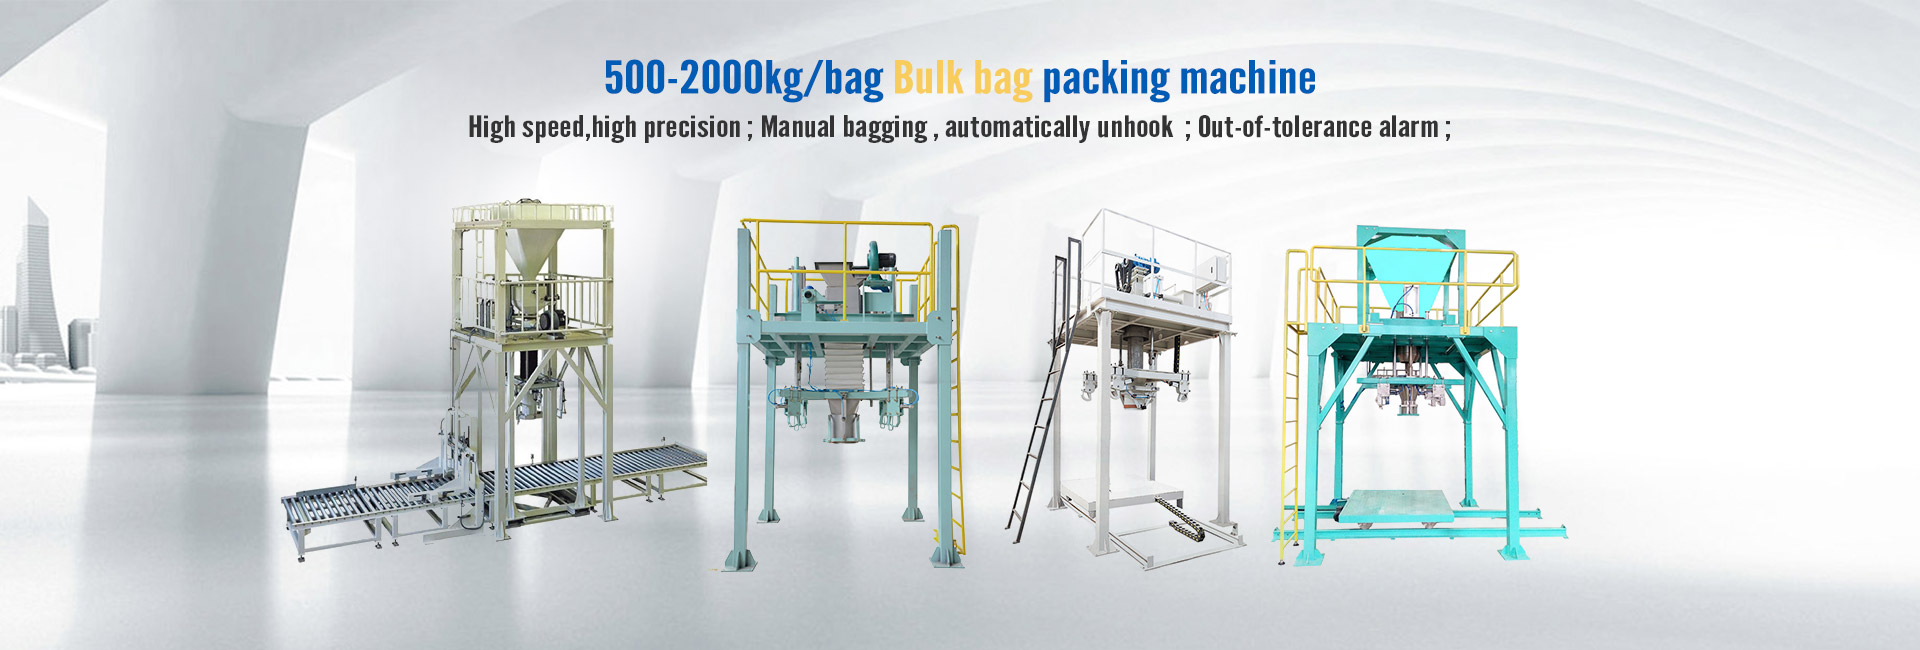 Bulk bag packaging machine